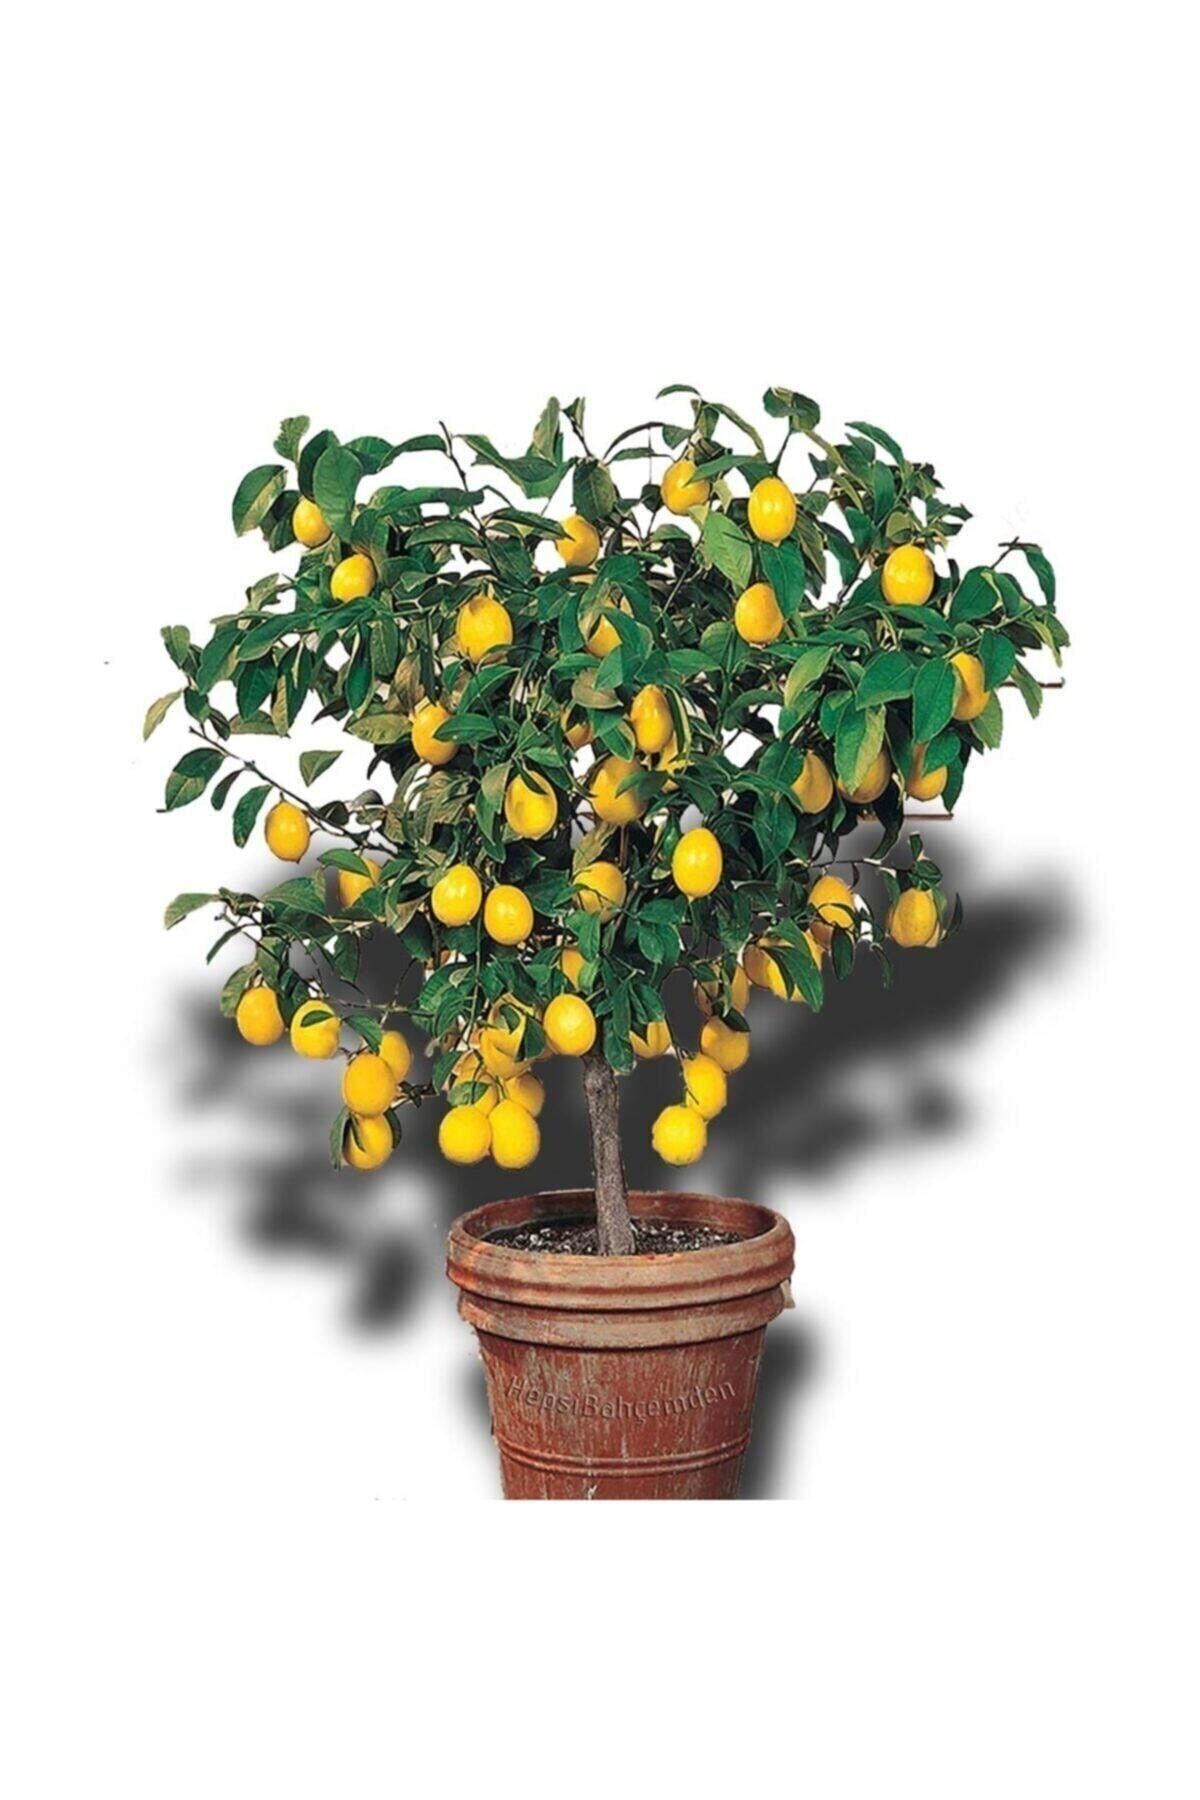 Hepsibahçemden Limon Ağacı Fidanı Saksılı Bodur Yediveren Mayer(İLK FOTOGRAF EN İYİ FORMUDUR, FİDAN YAS ALDİKCA)